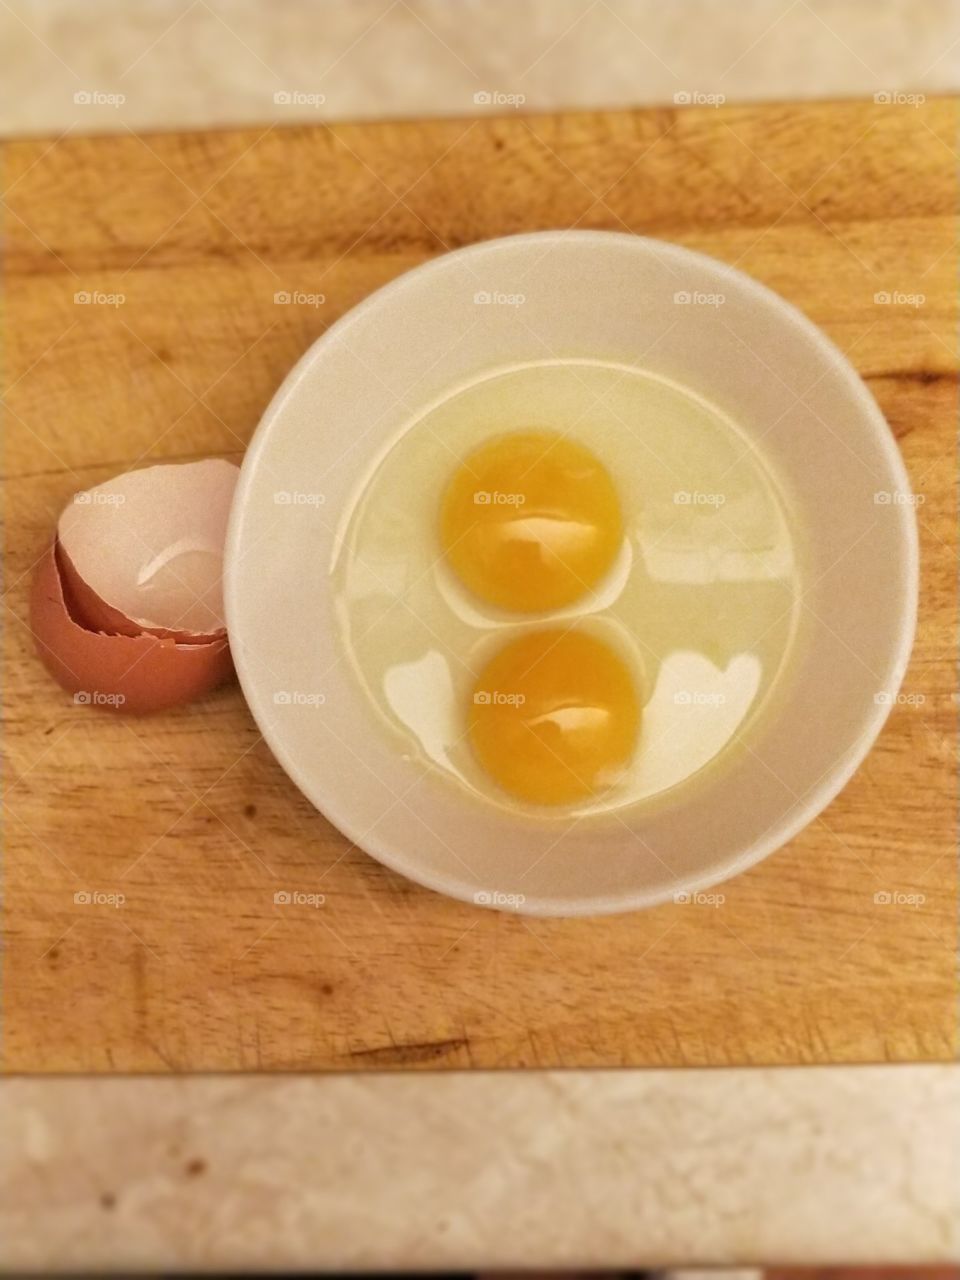 Lucky Eggs!